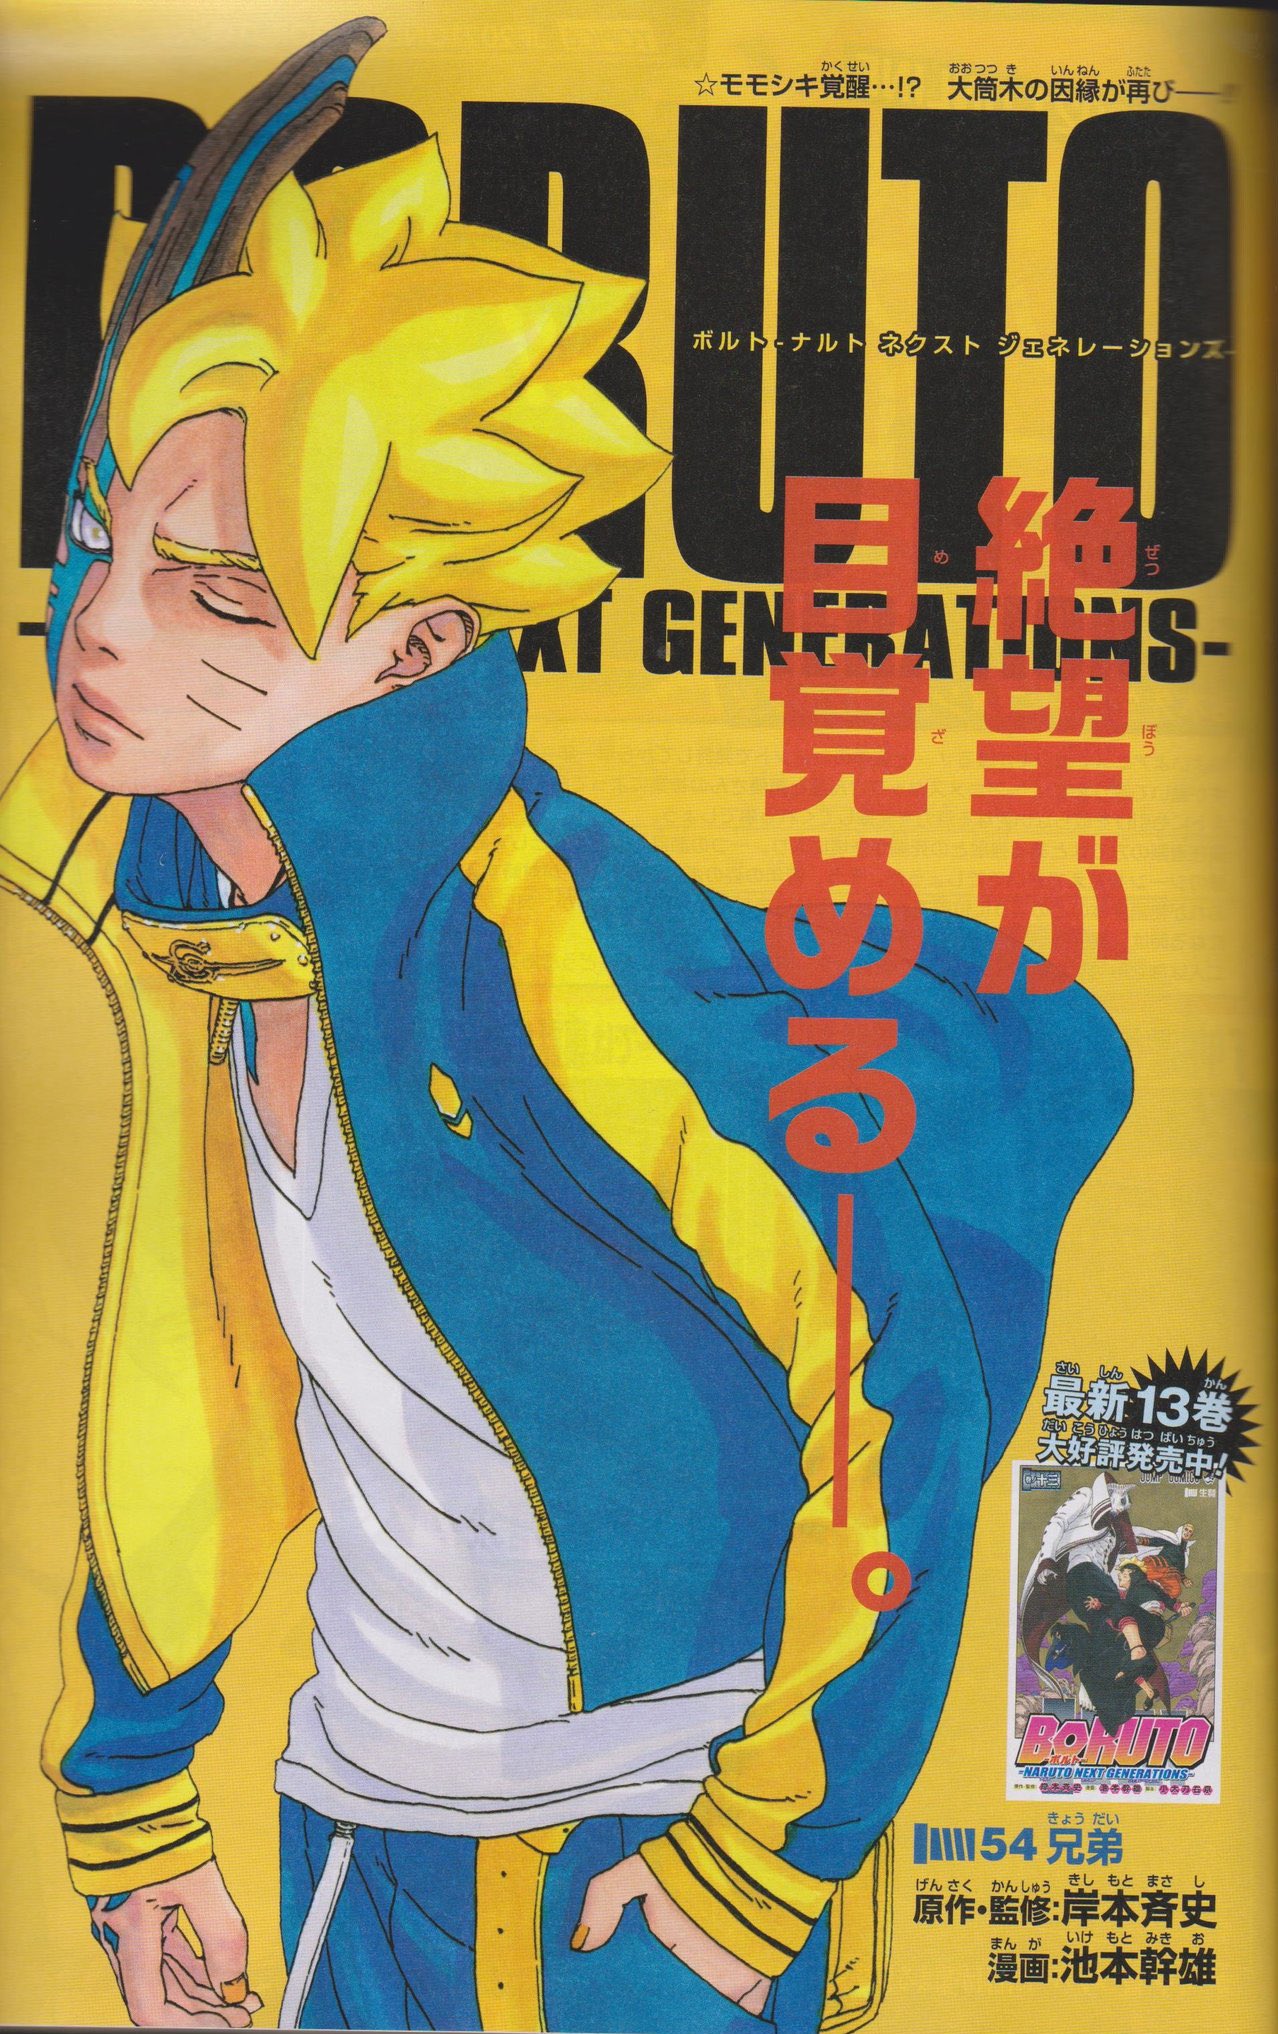 Saint Seiya Zone — Saint Seiya Omega Manga - Chapter 1 Mangaka: ばう